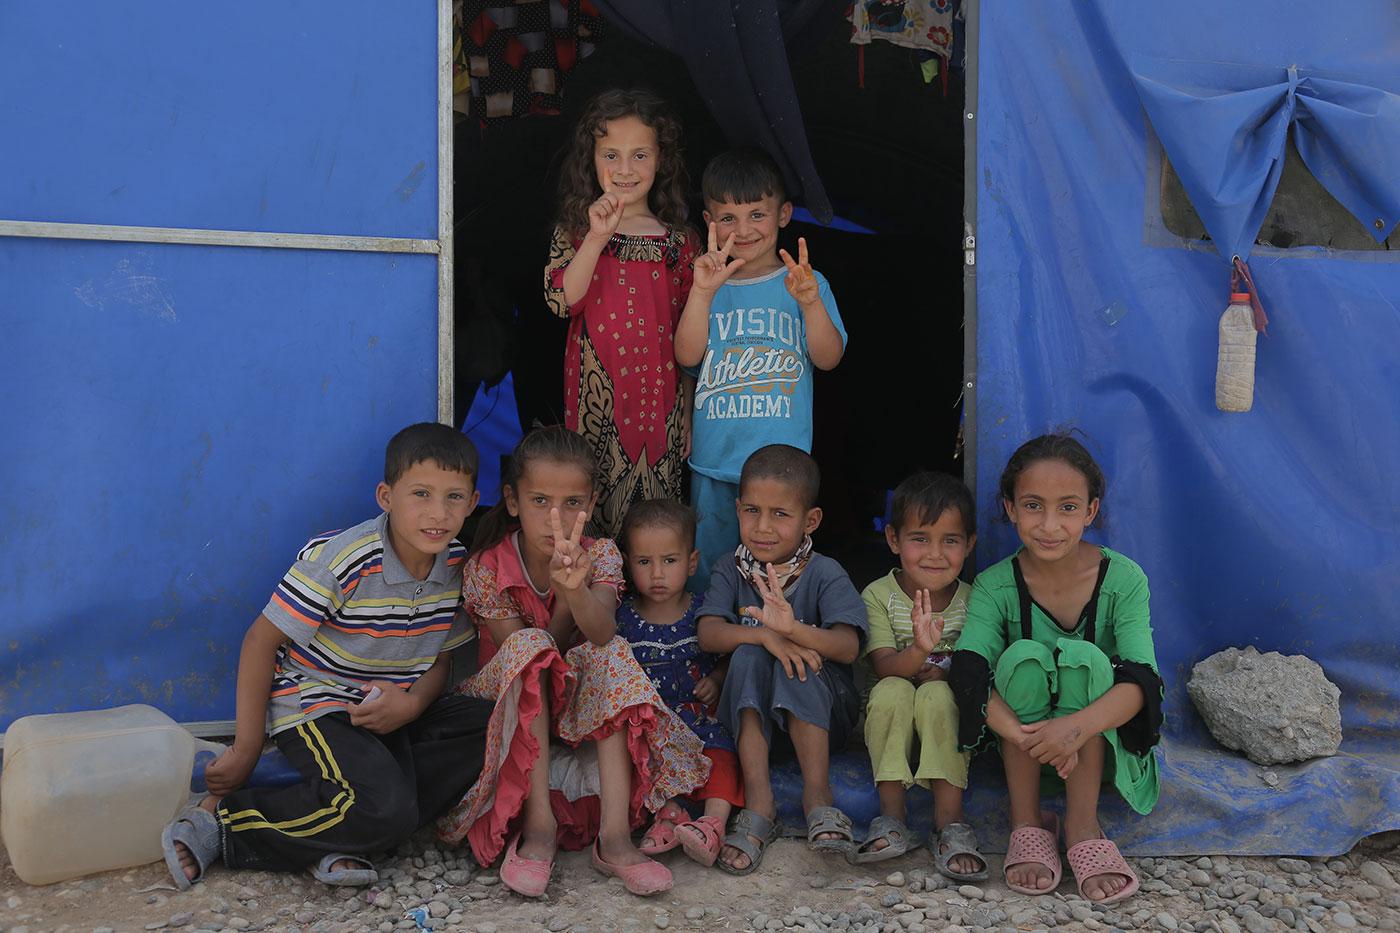 أطفال من عائلات تعيش في خيمة في مخيم إلى الجنوب من الموصل يأوي عائلات نازحة بسبب القتال بين داعش والقوات العراقية، مارس/آذار 2017. © 2017 بران سيموندسون لـ هيومن رايتس ووتش